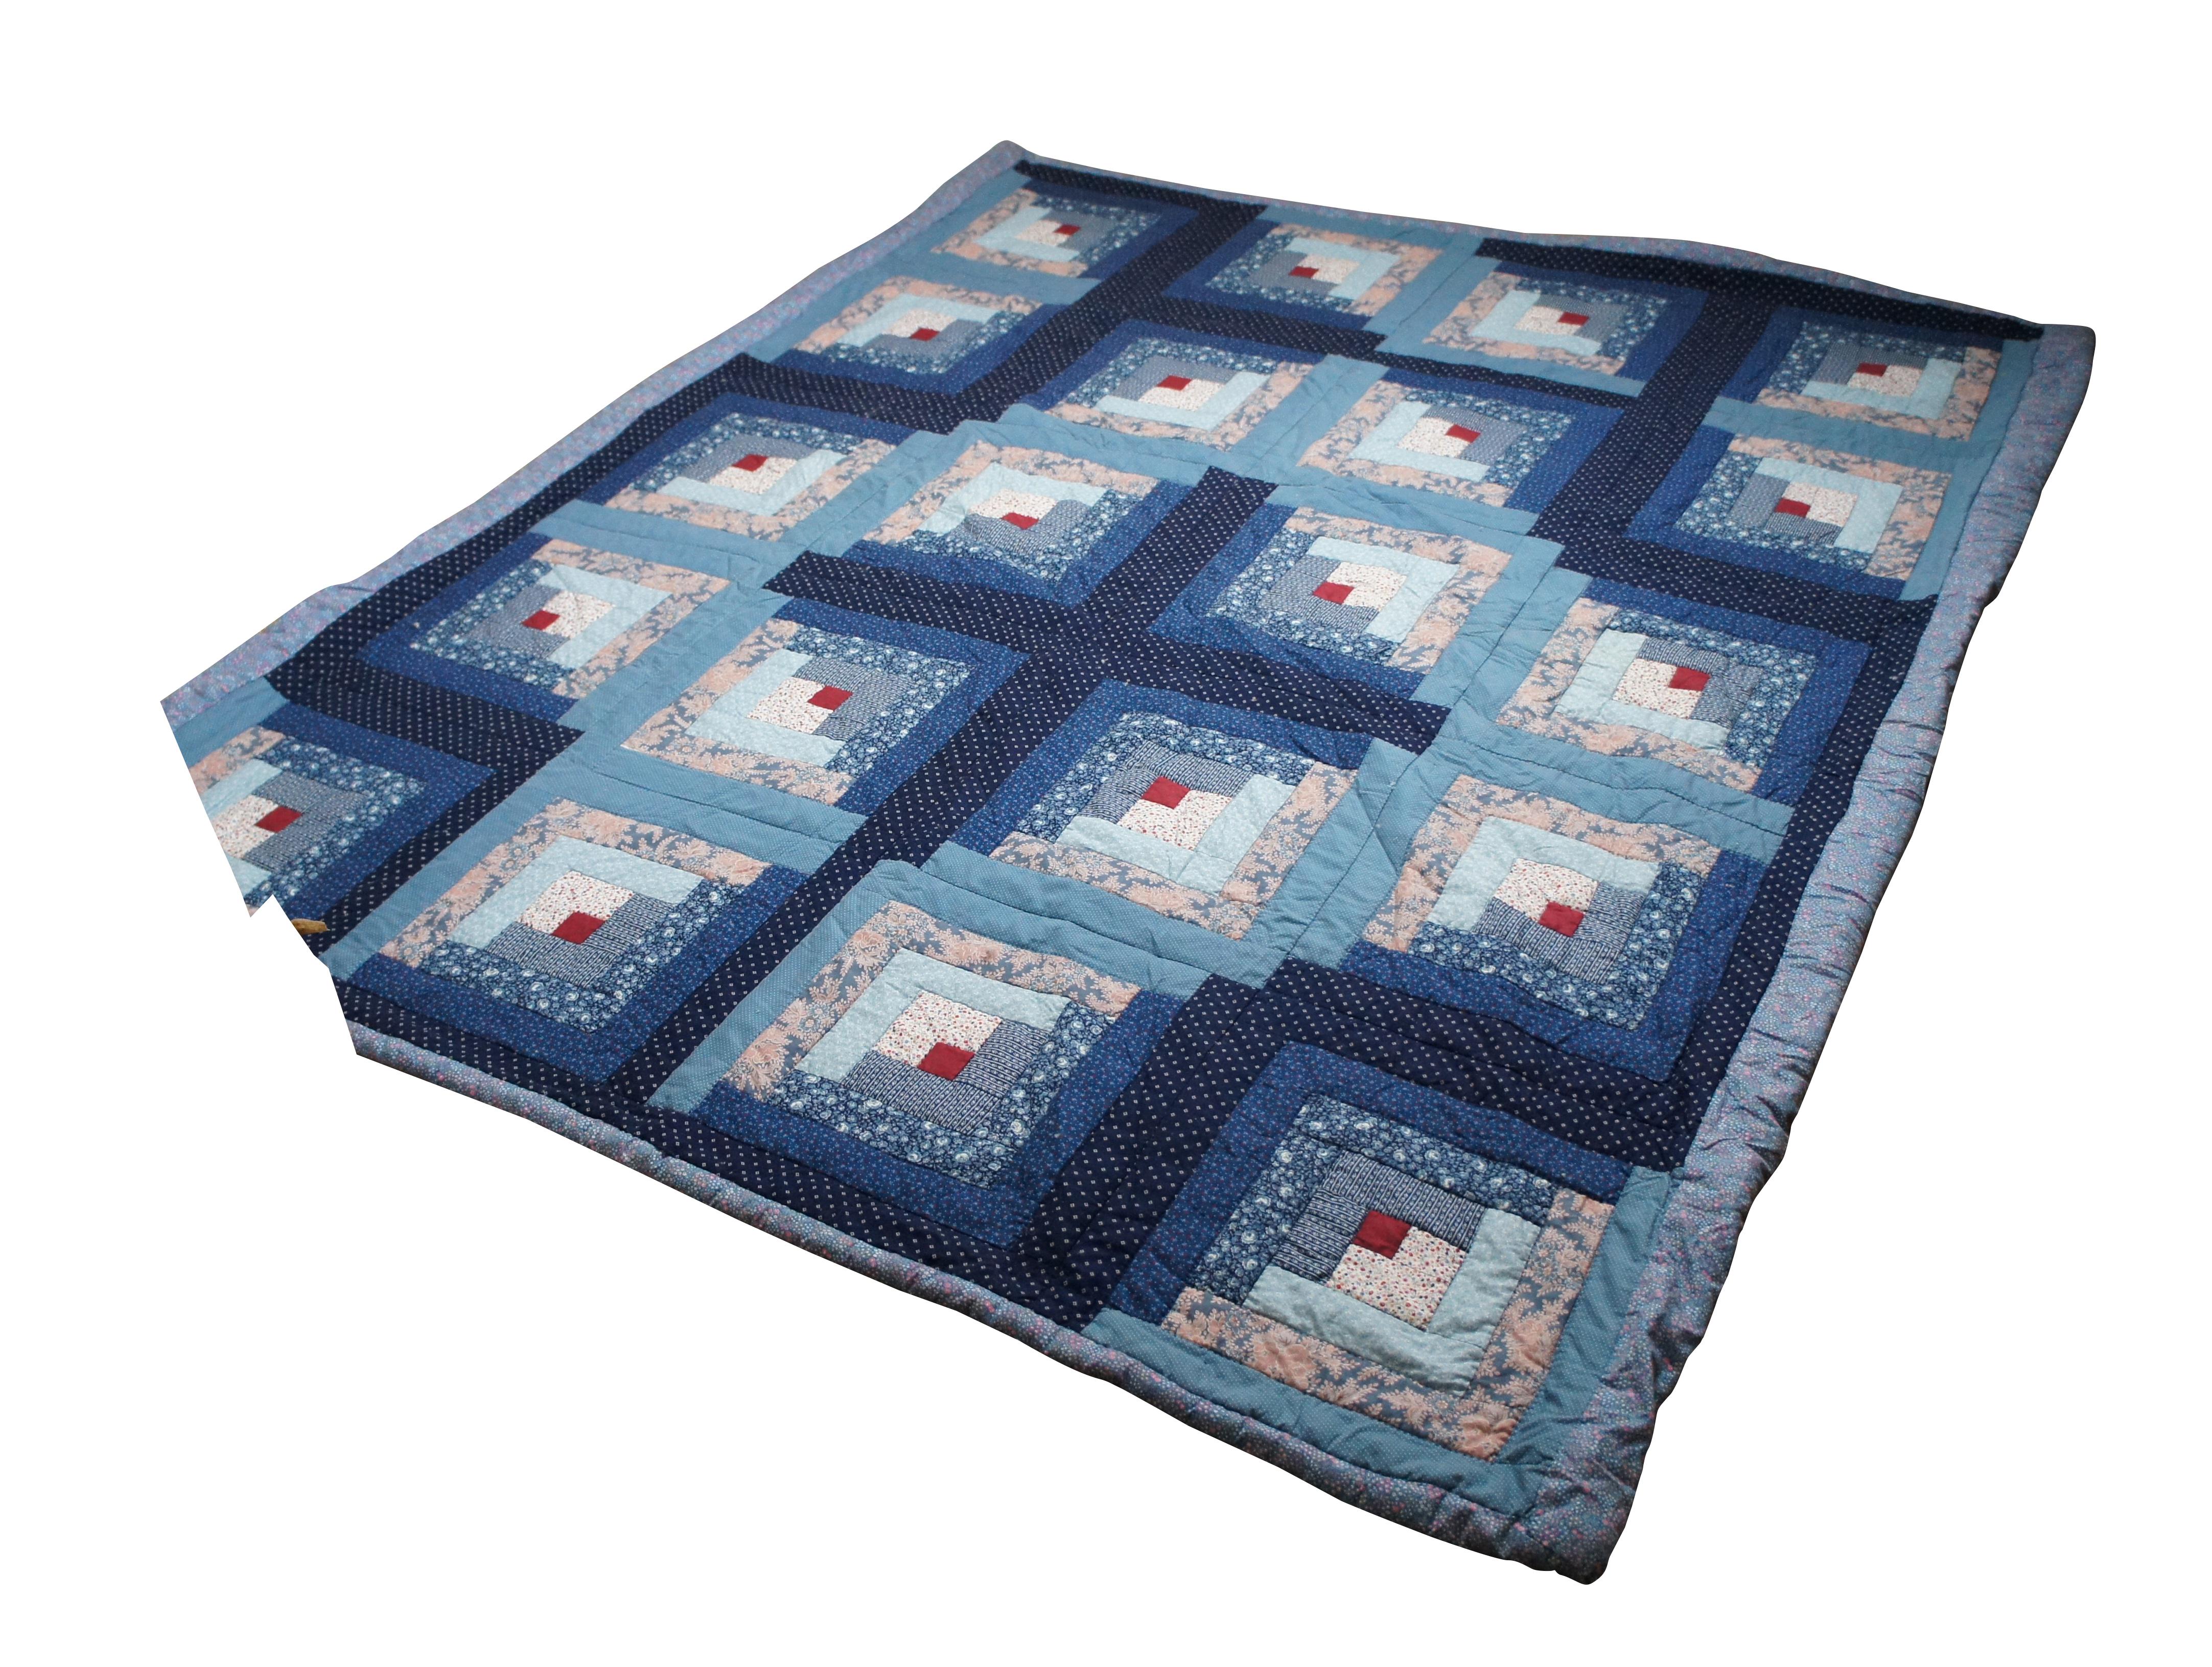 Handgestickte Vintage-Decke mit dem traditionellen geometrischen Log Cabin-Muster mit Quadraten, Kreuzen und floralen Motiven. Voll- bis Queensize.

Das Blockhausmuster ist das älteste Quiltmuster und vielleicht auch das beliebteste, denn es wird